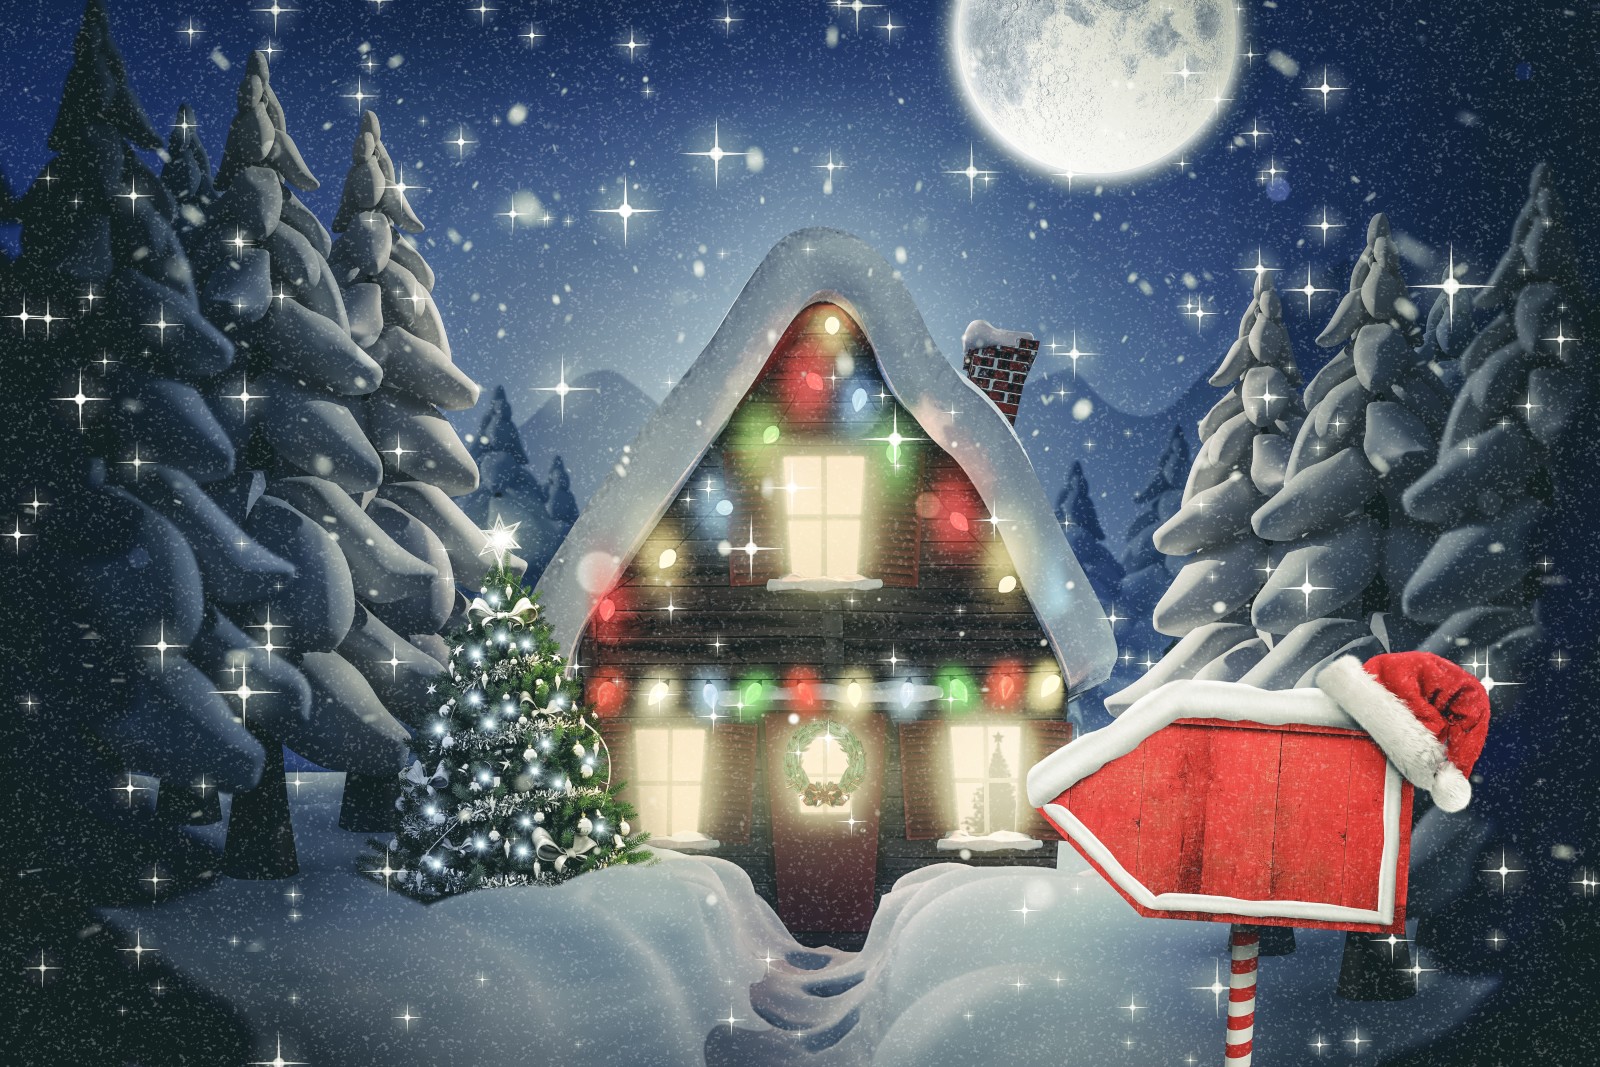 눈, 새해, 크리스마스, 명랑한, 겨울, 밤, 오두막